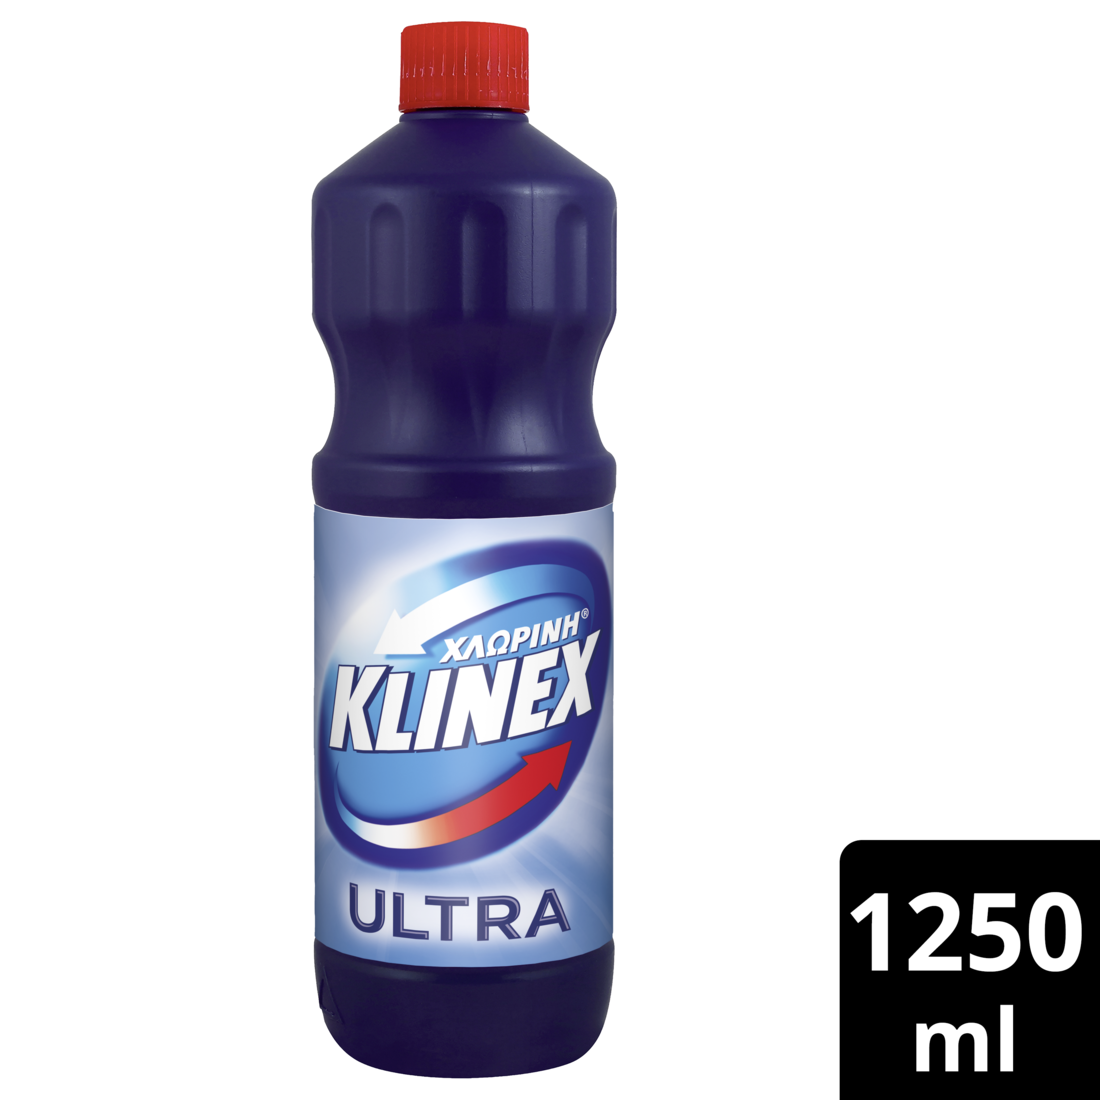 Χλωρίνη Ultra Protection Regular Klinex (1,25lt)